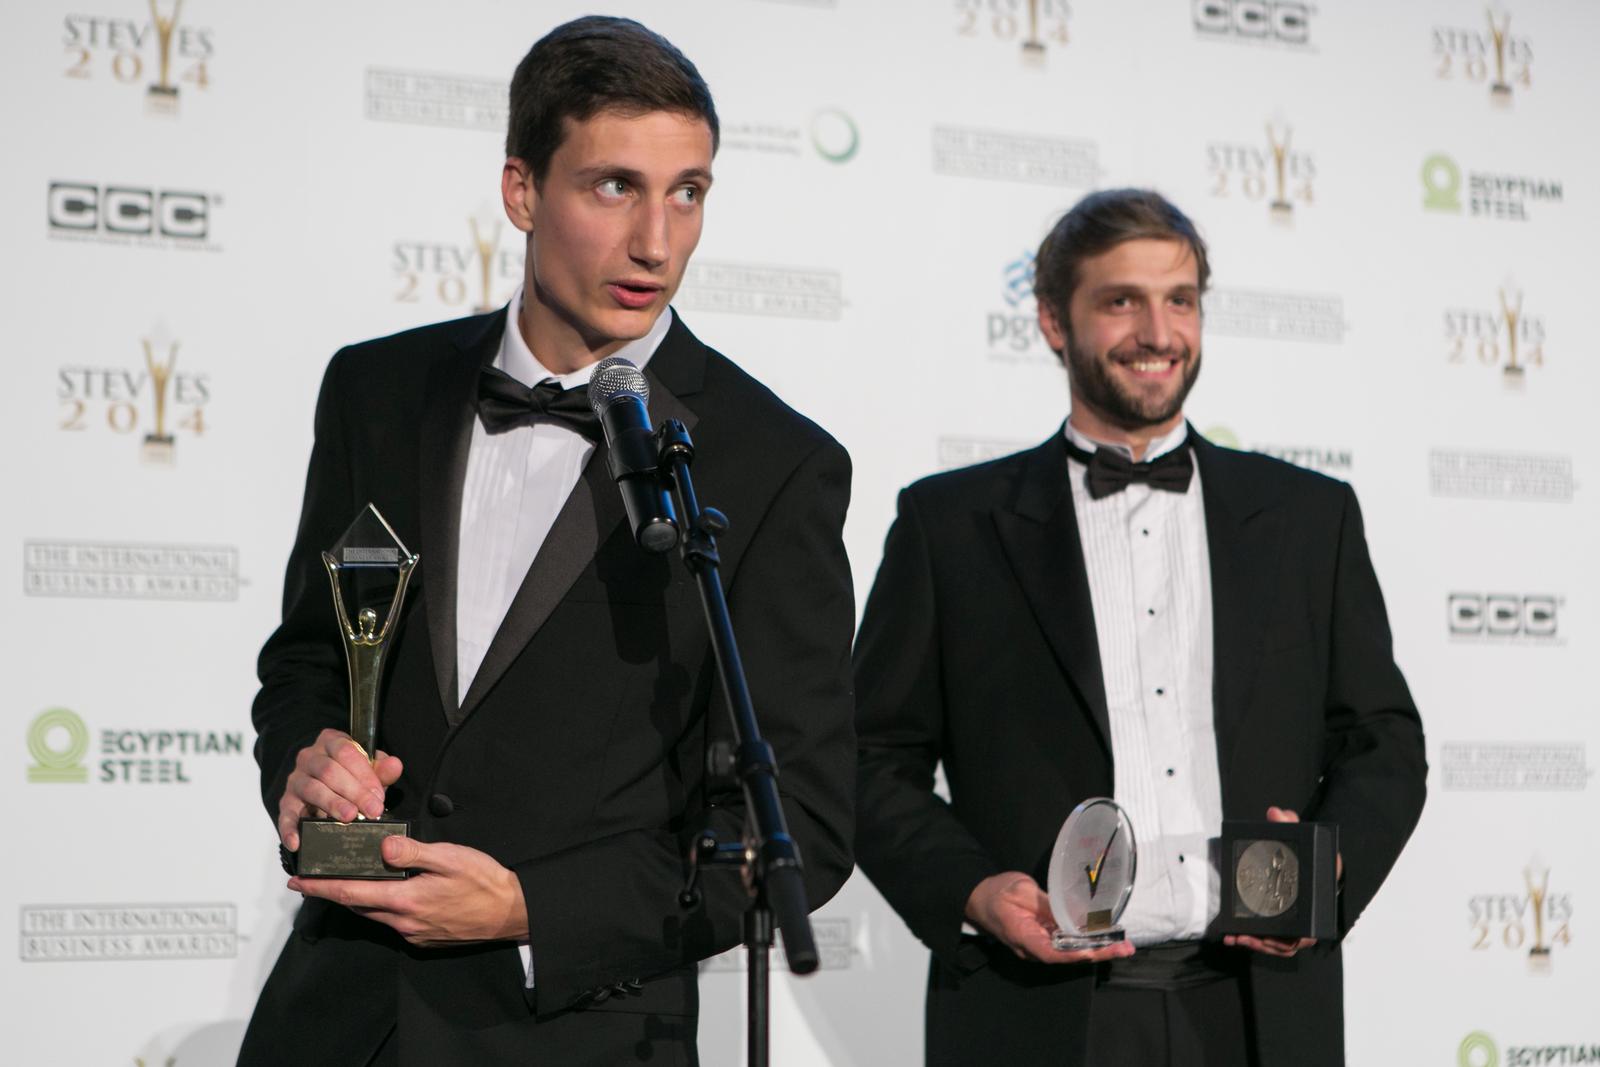 Stolze Gewinner des International Business Awards 2014